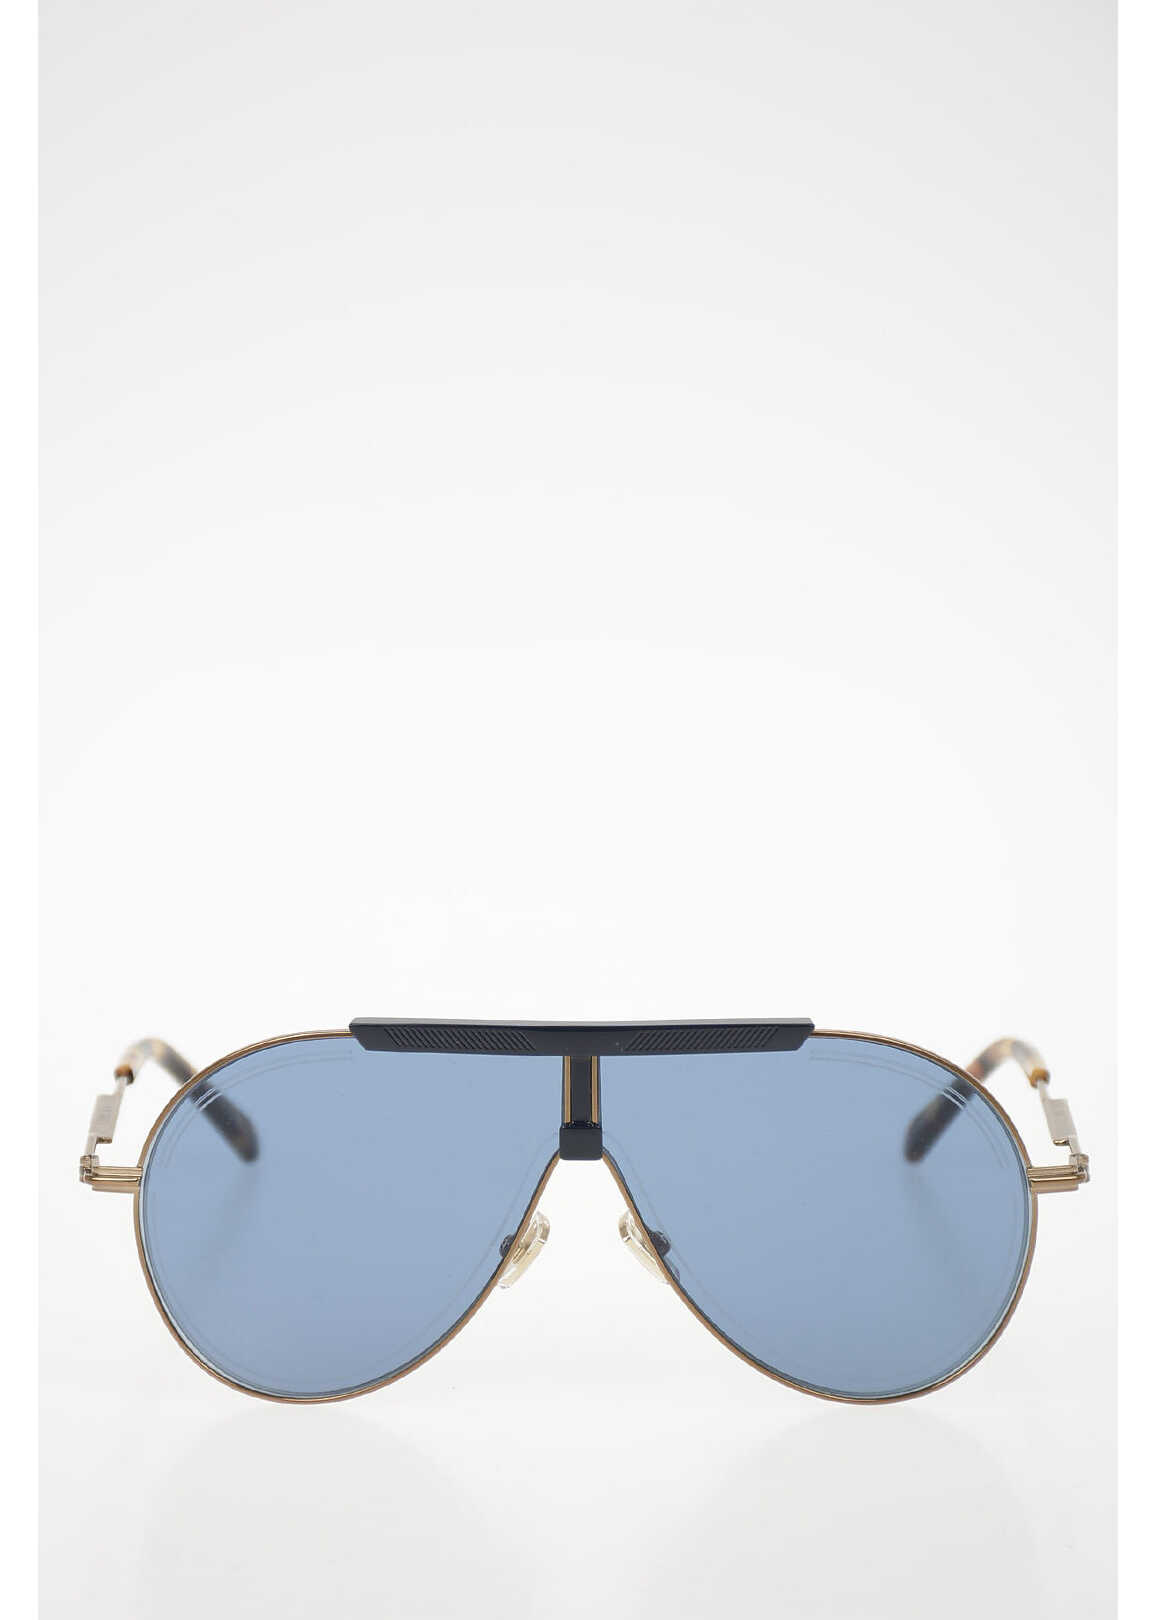 Jimmy Choo Full Rim Universal Fit Sunglasses Blue